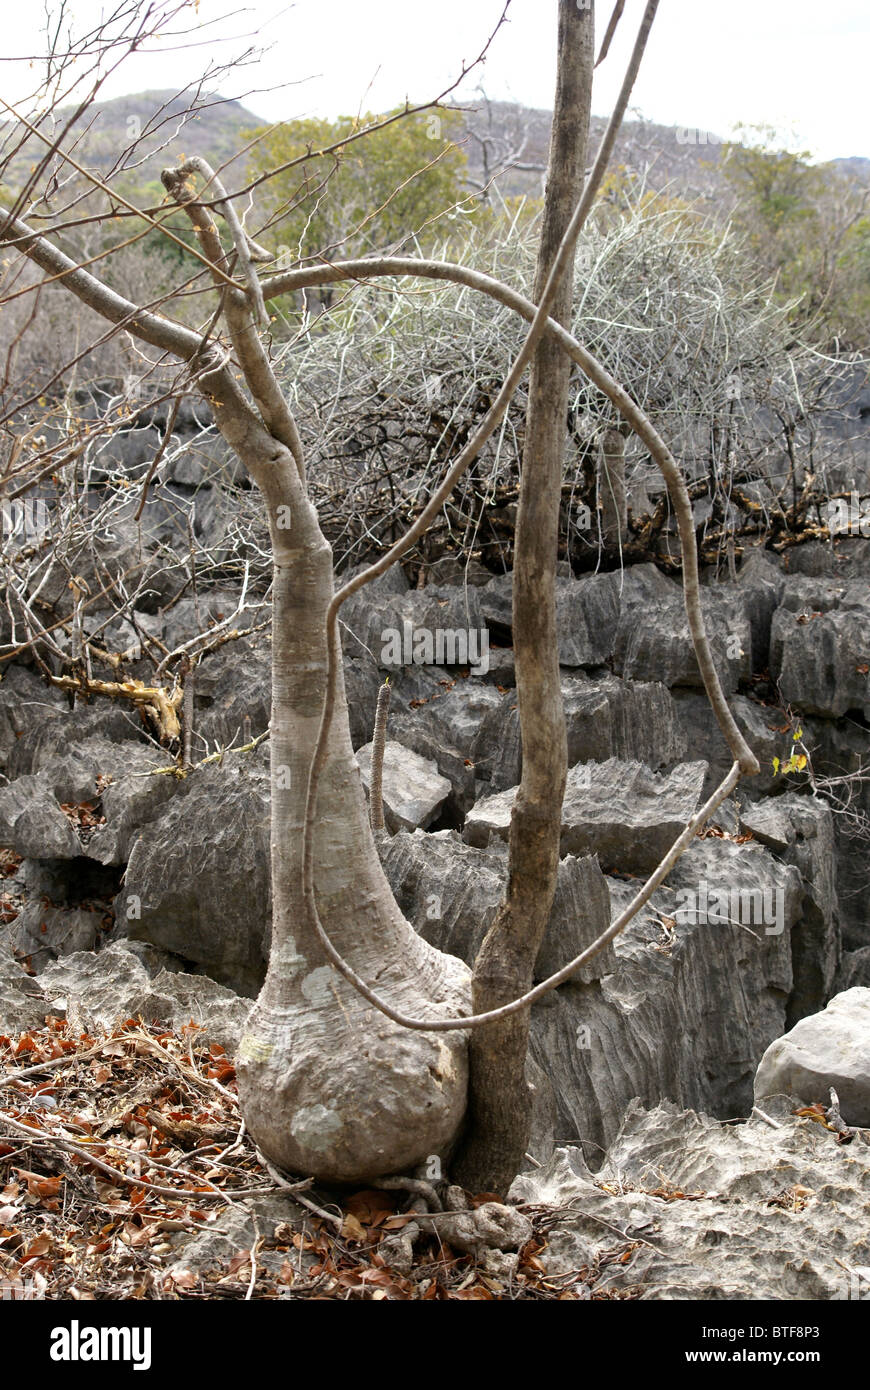 Madagascar, Ankarana Special Reserve Large base of an Adenia tree Stock Photo